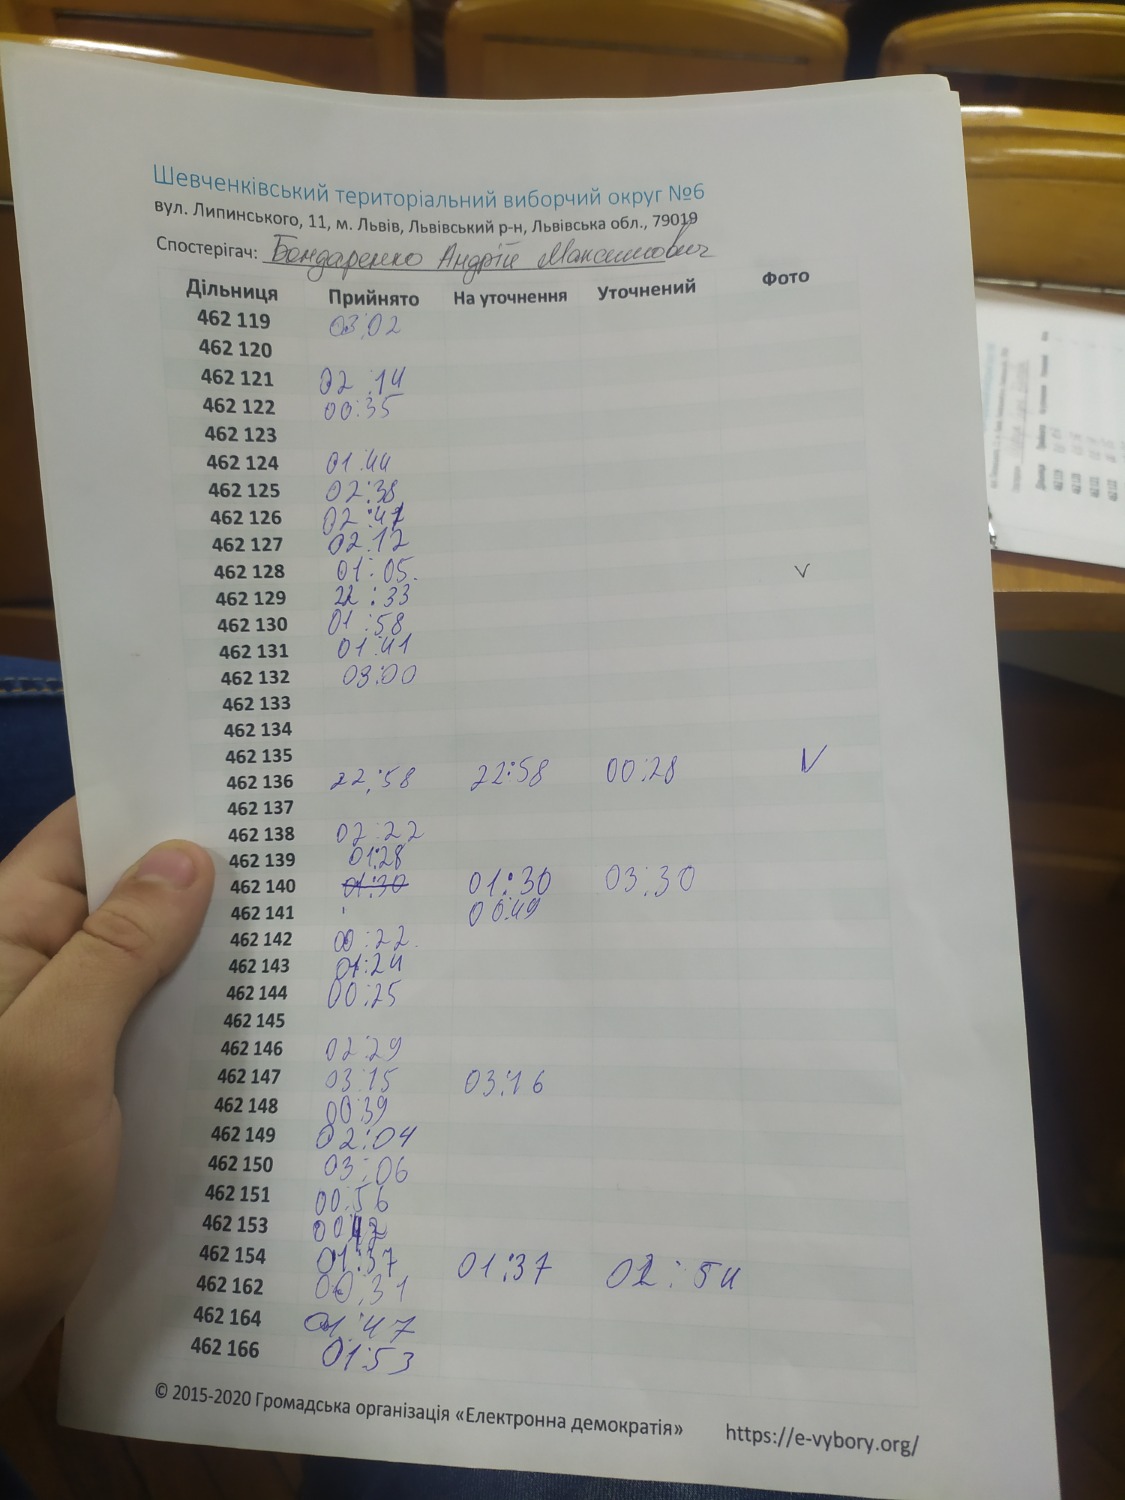 Протокол результатів голосування на виборчій дільниці № 462140